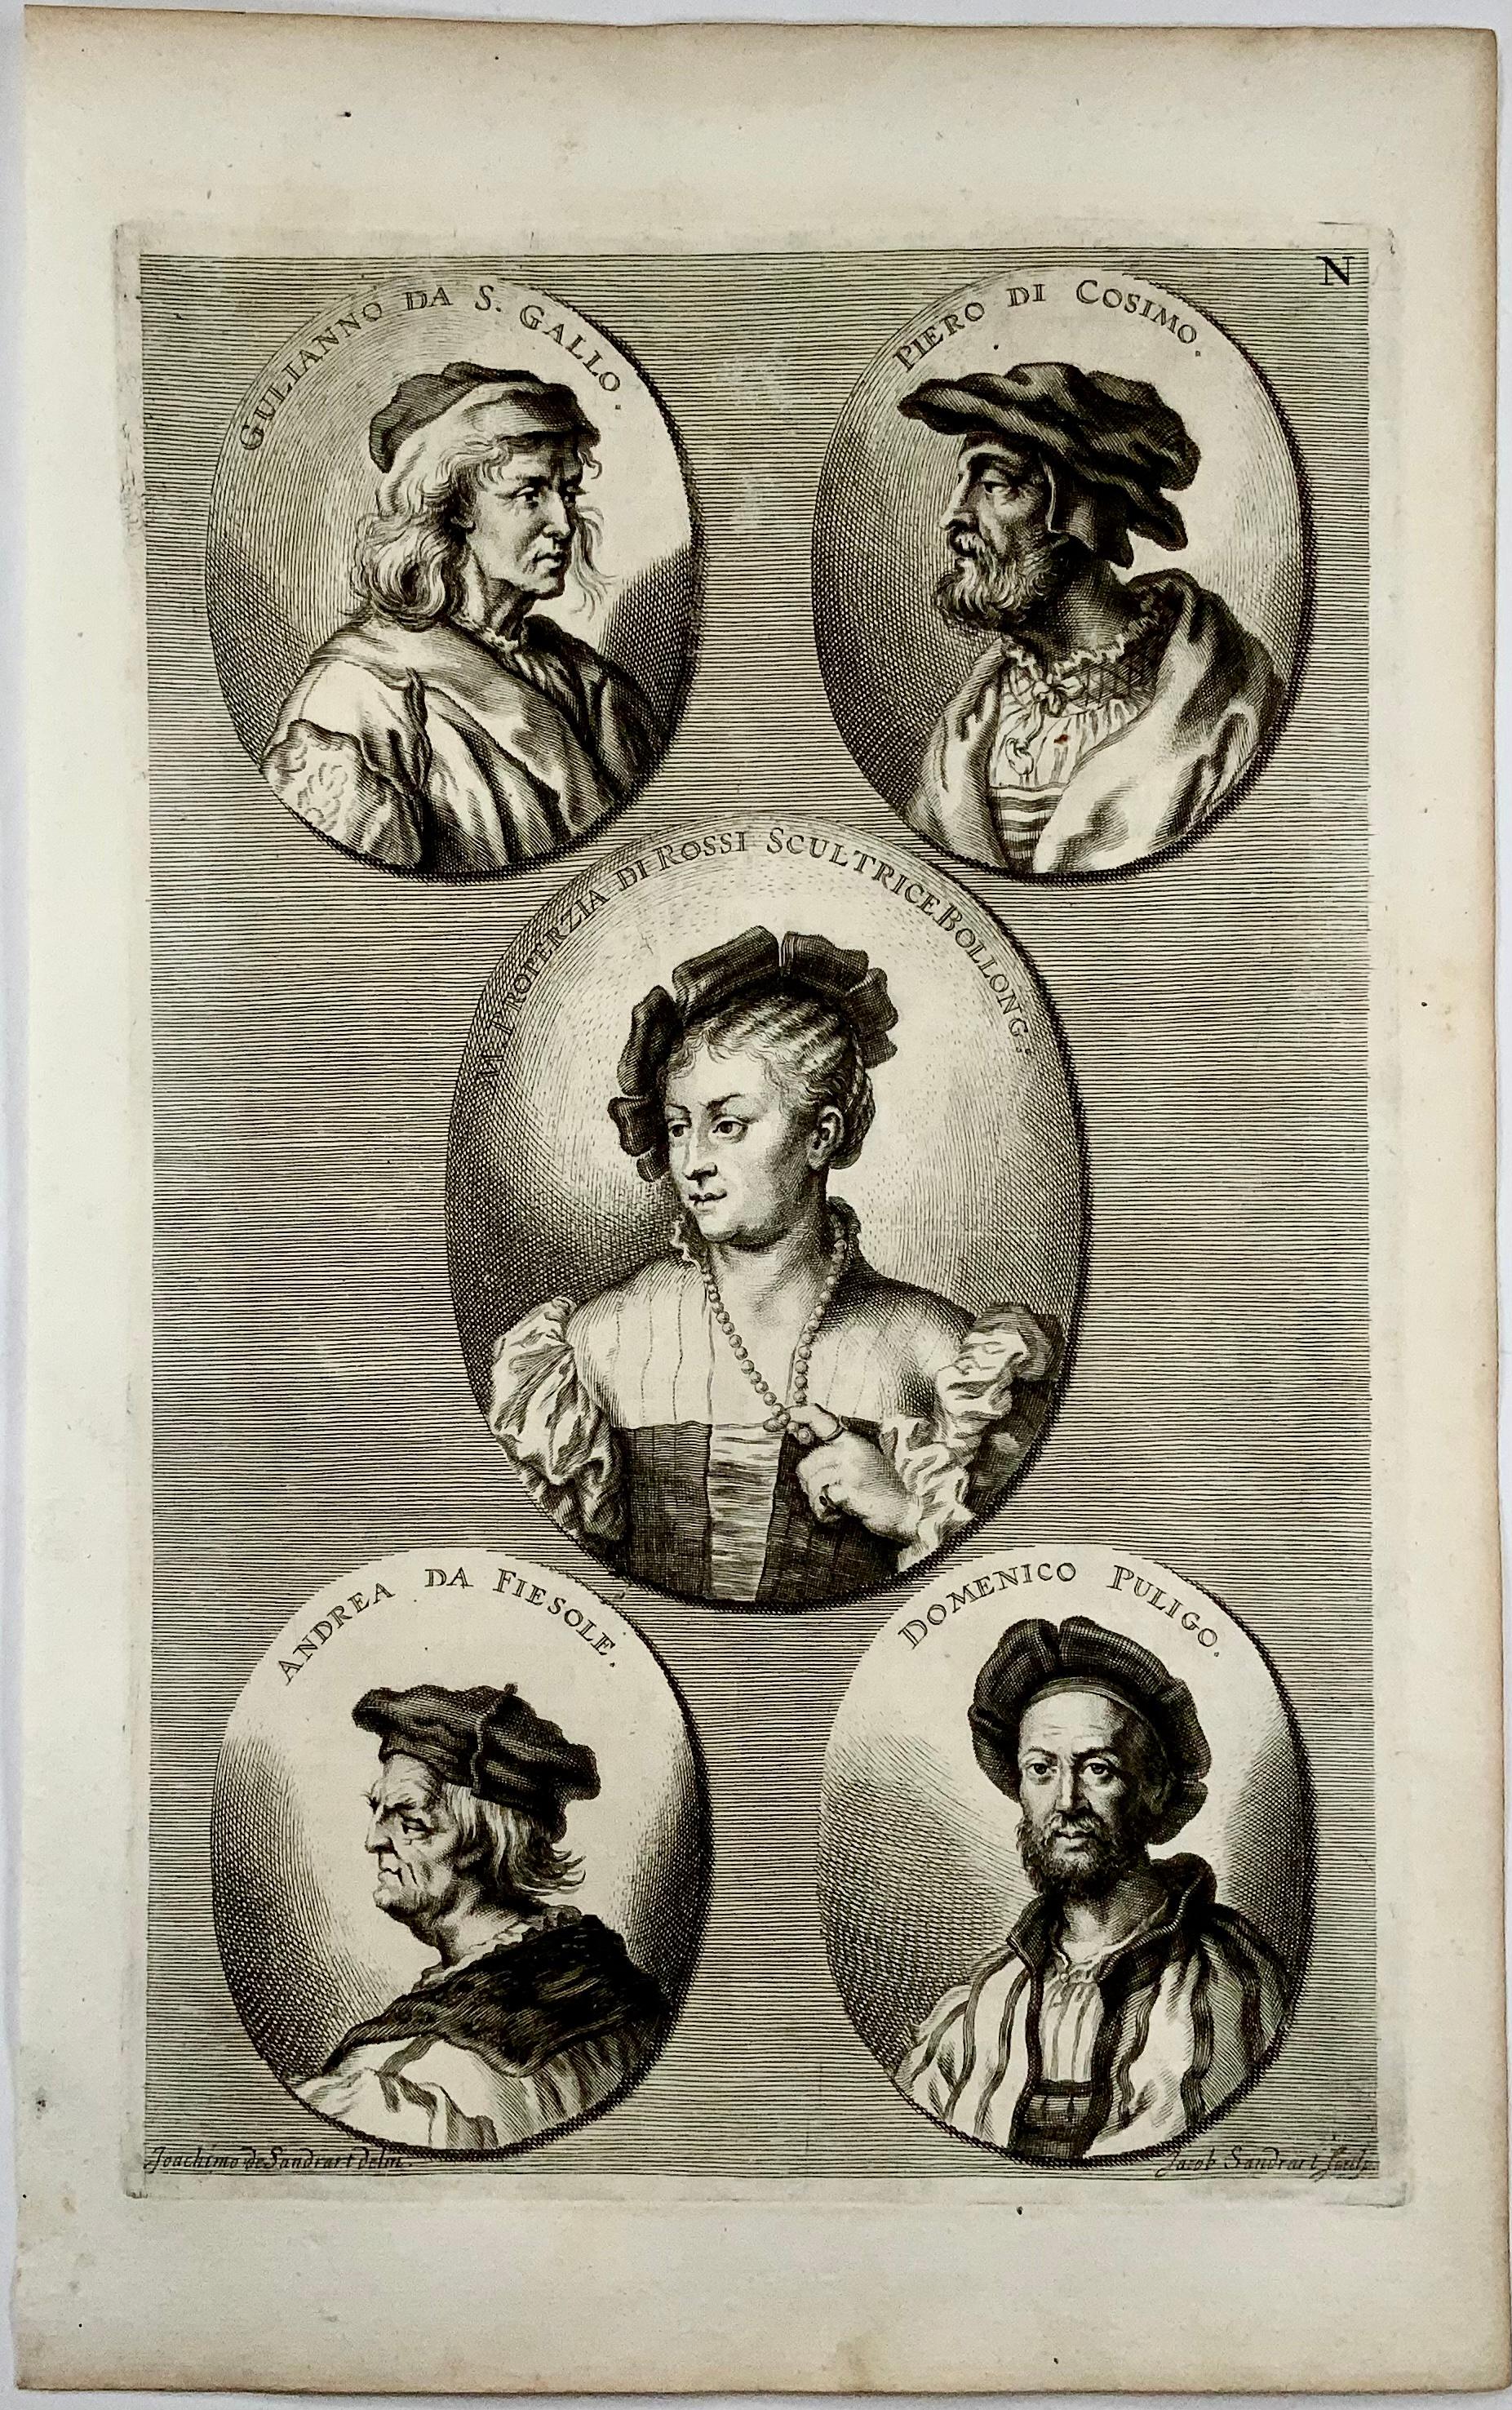 Fine folio including early and finely executed portraits of Renaissance artists by Joachim von Sandrart. 

Included are portraits of:

Mino da Fiesole;
Giuliano da Sangallo;
Domenico Puligo;
Andrea da Fiesole, and 
Properzia de'